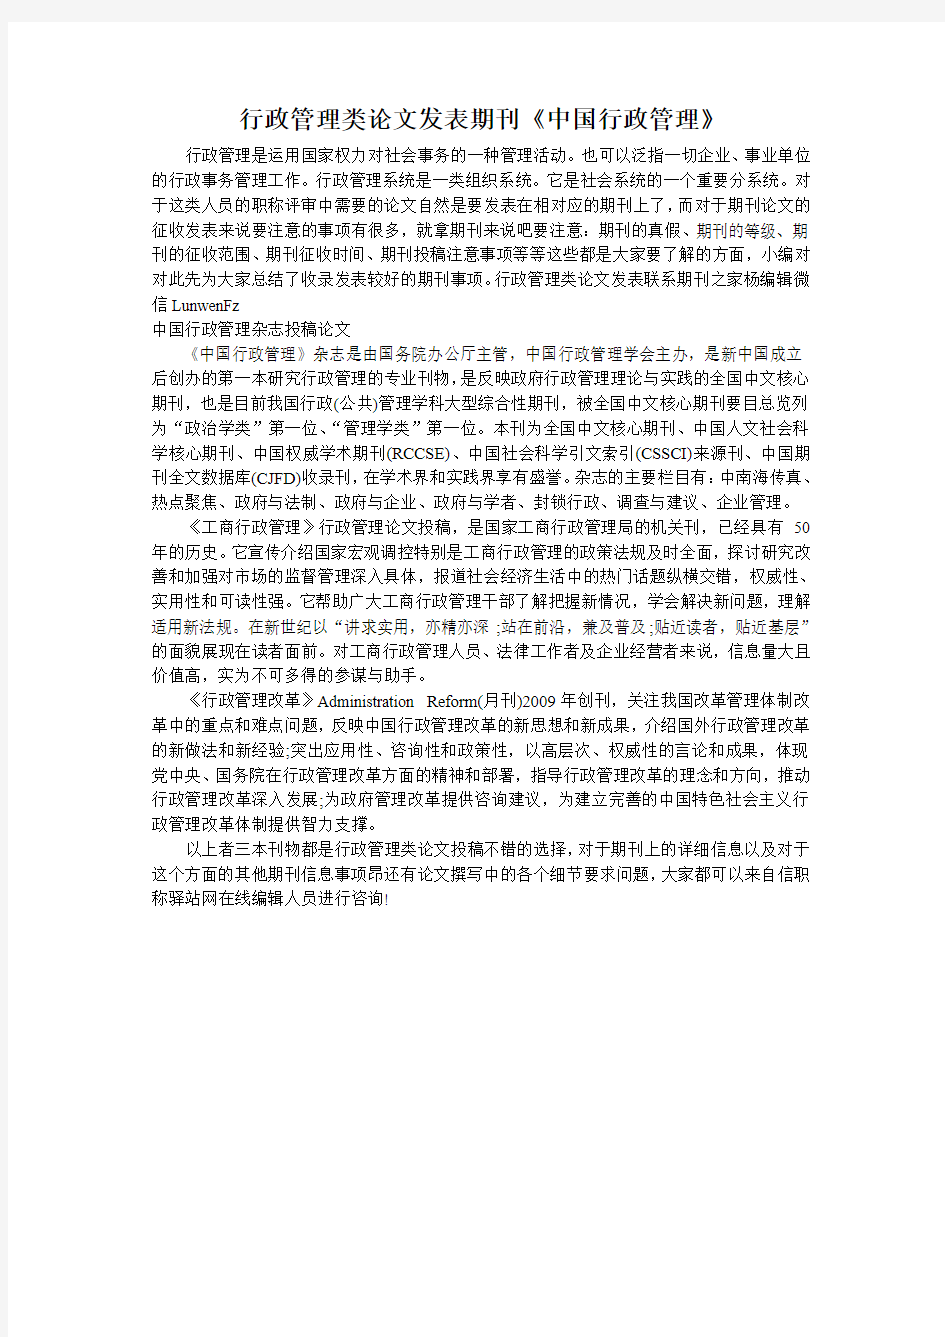 行政管理类论文发表期刊《中国行政管理》